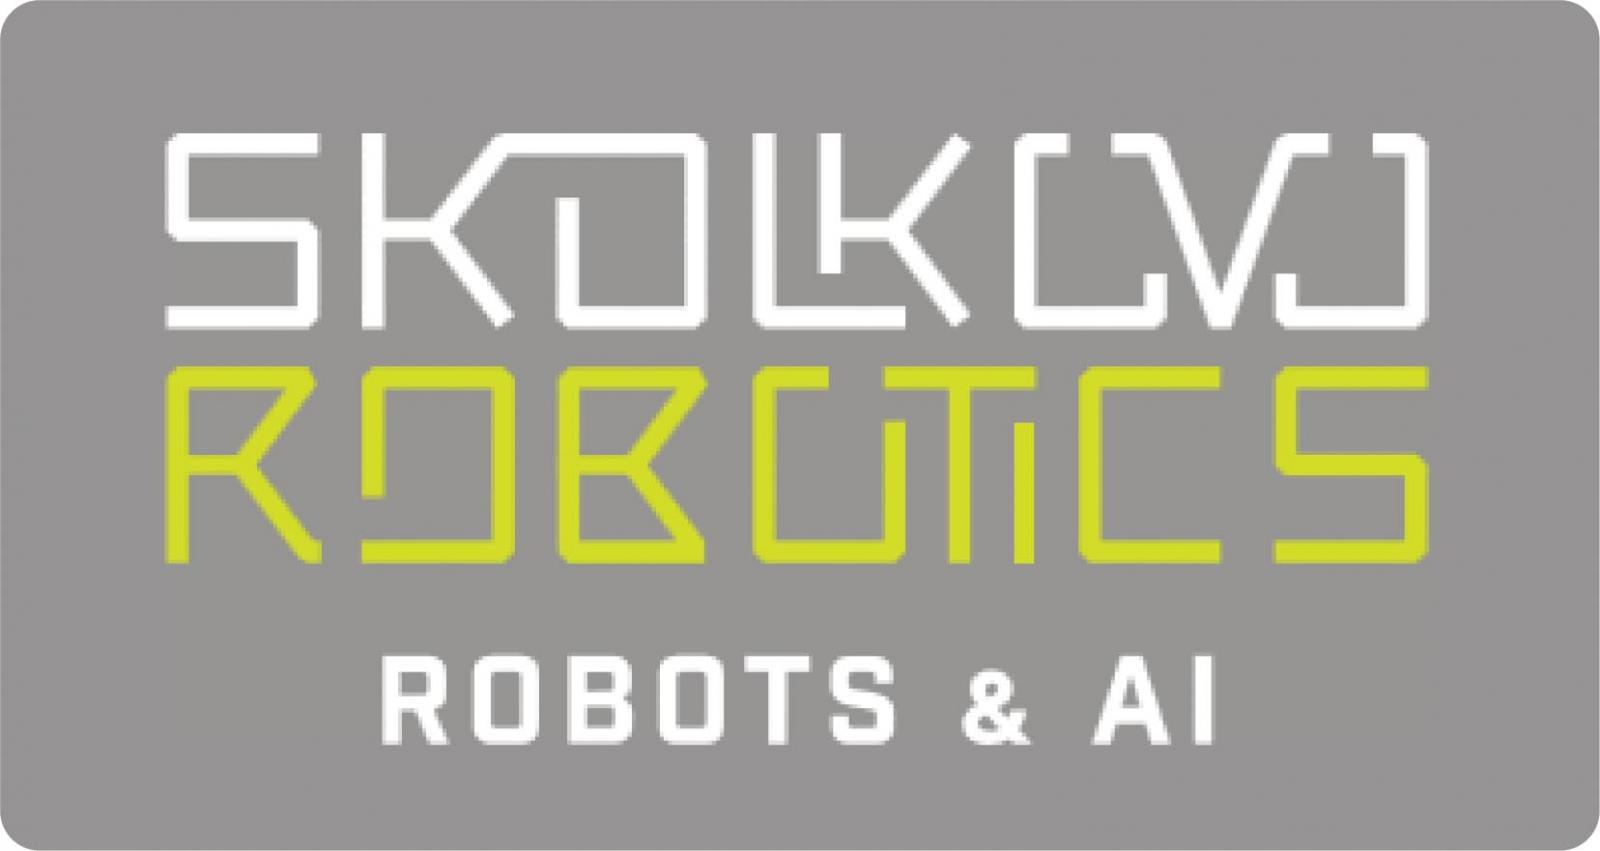 Сбербанк представил свои новейшие разработки на форуме Skolkovo Robotics & AI